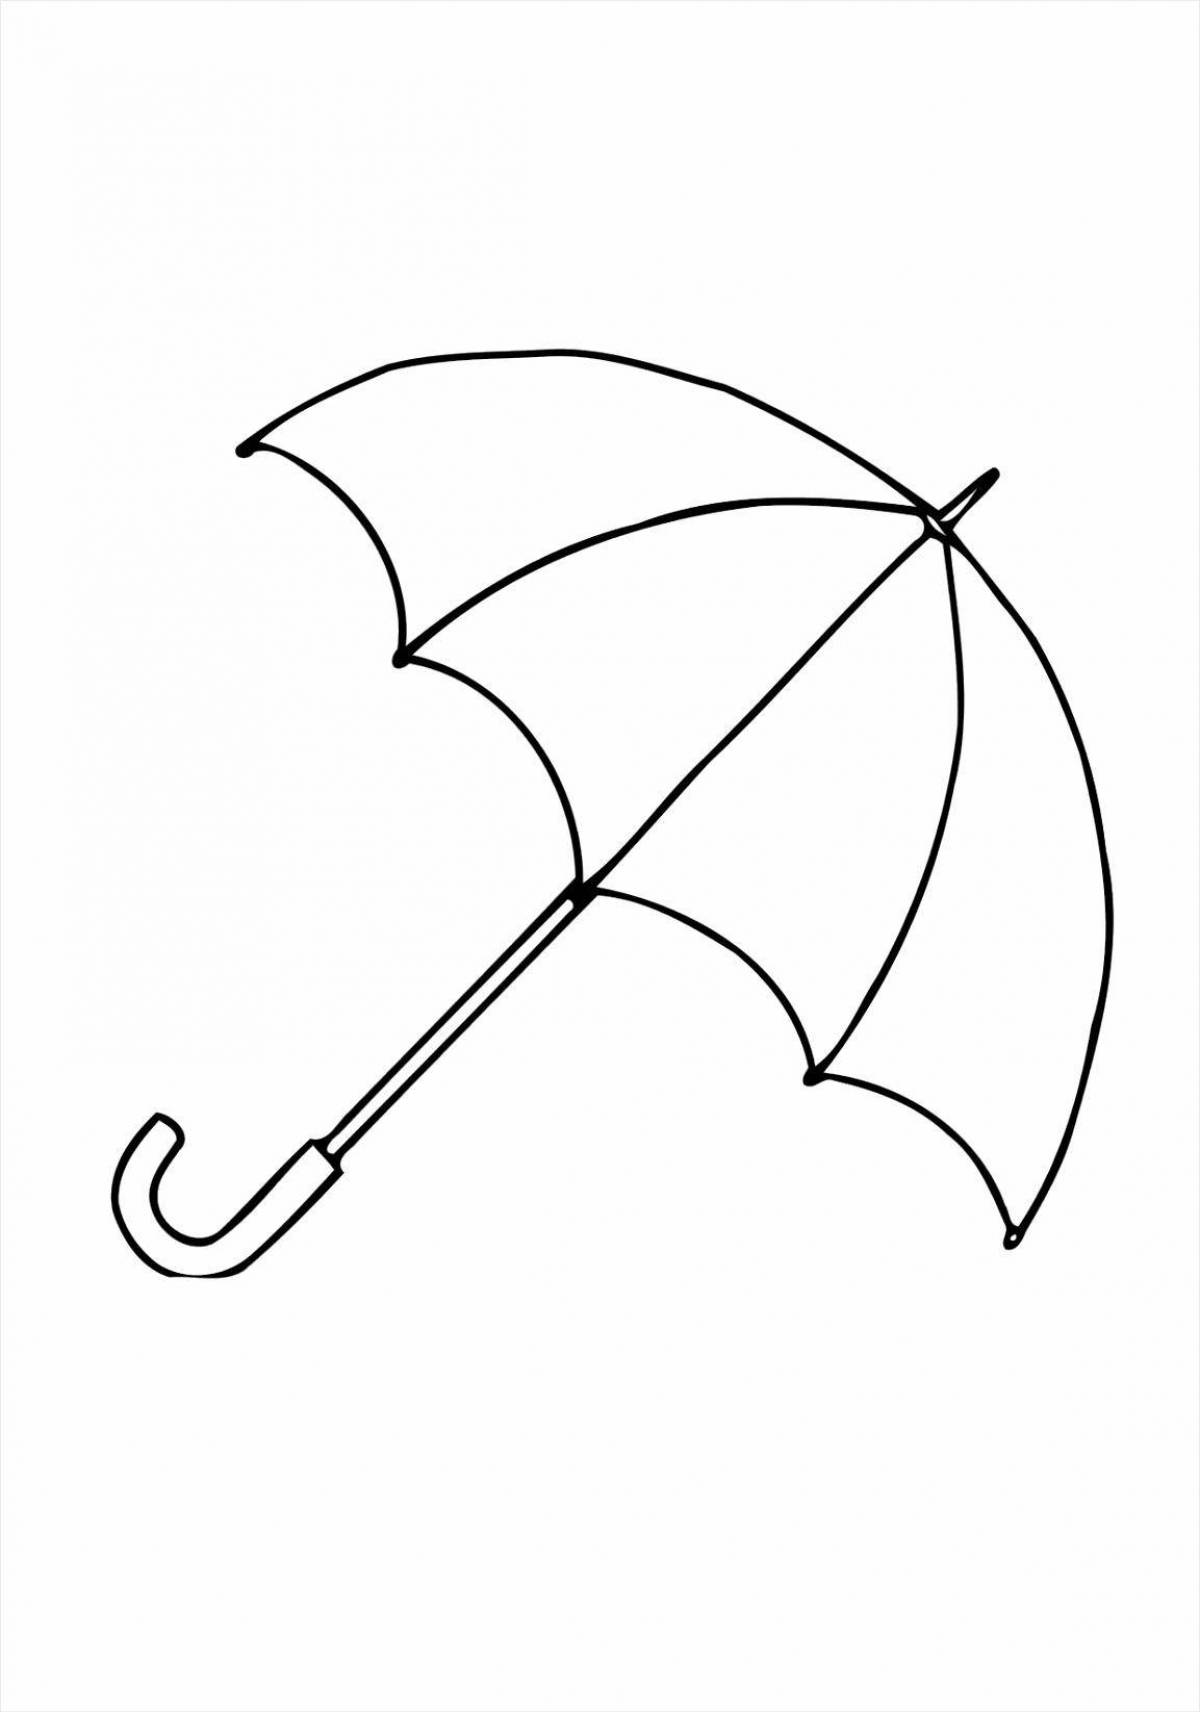 Красочная раскраска зонтик для детей 4-5 лет